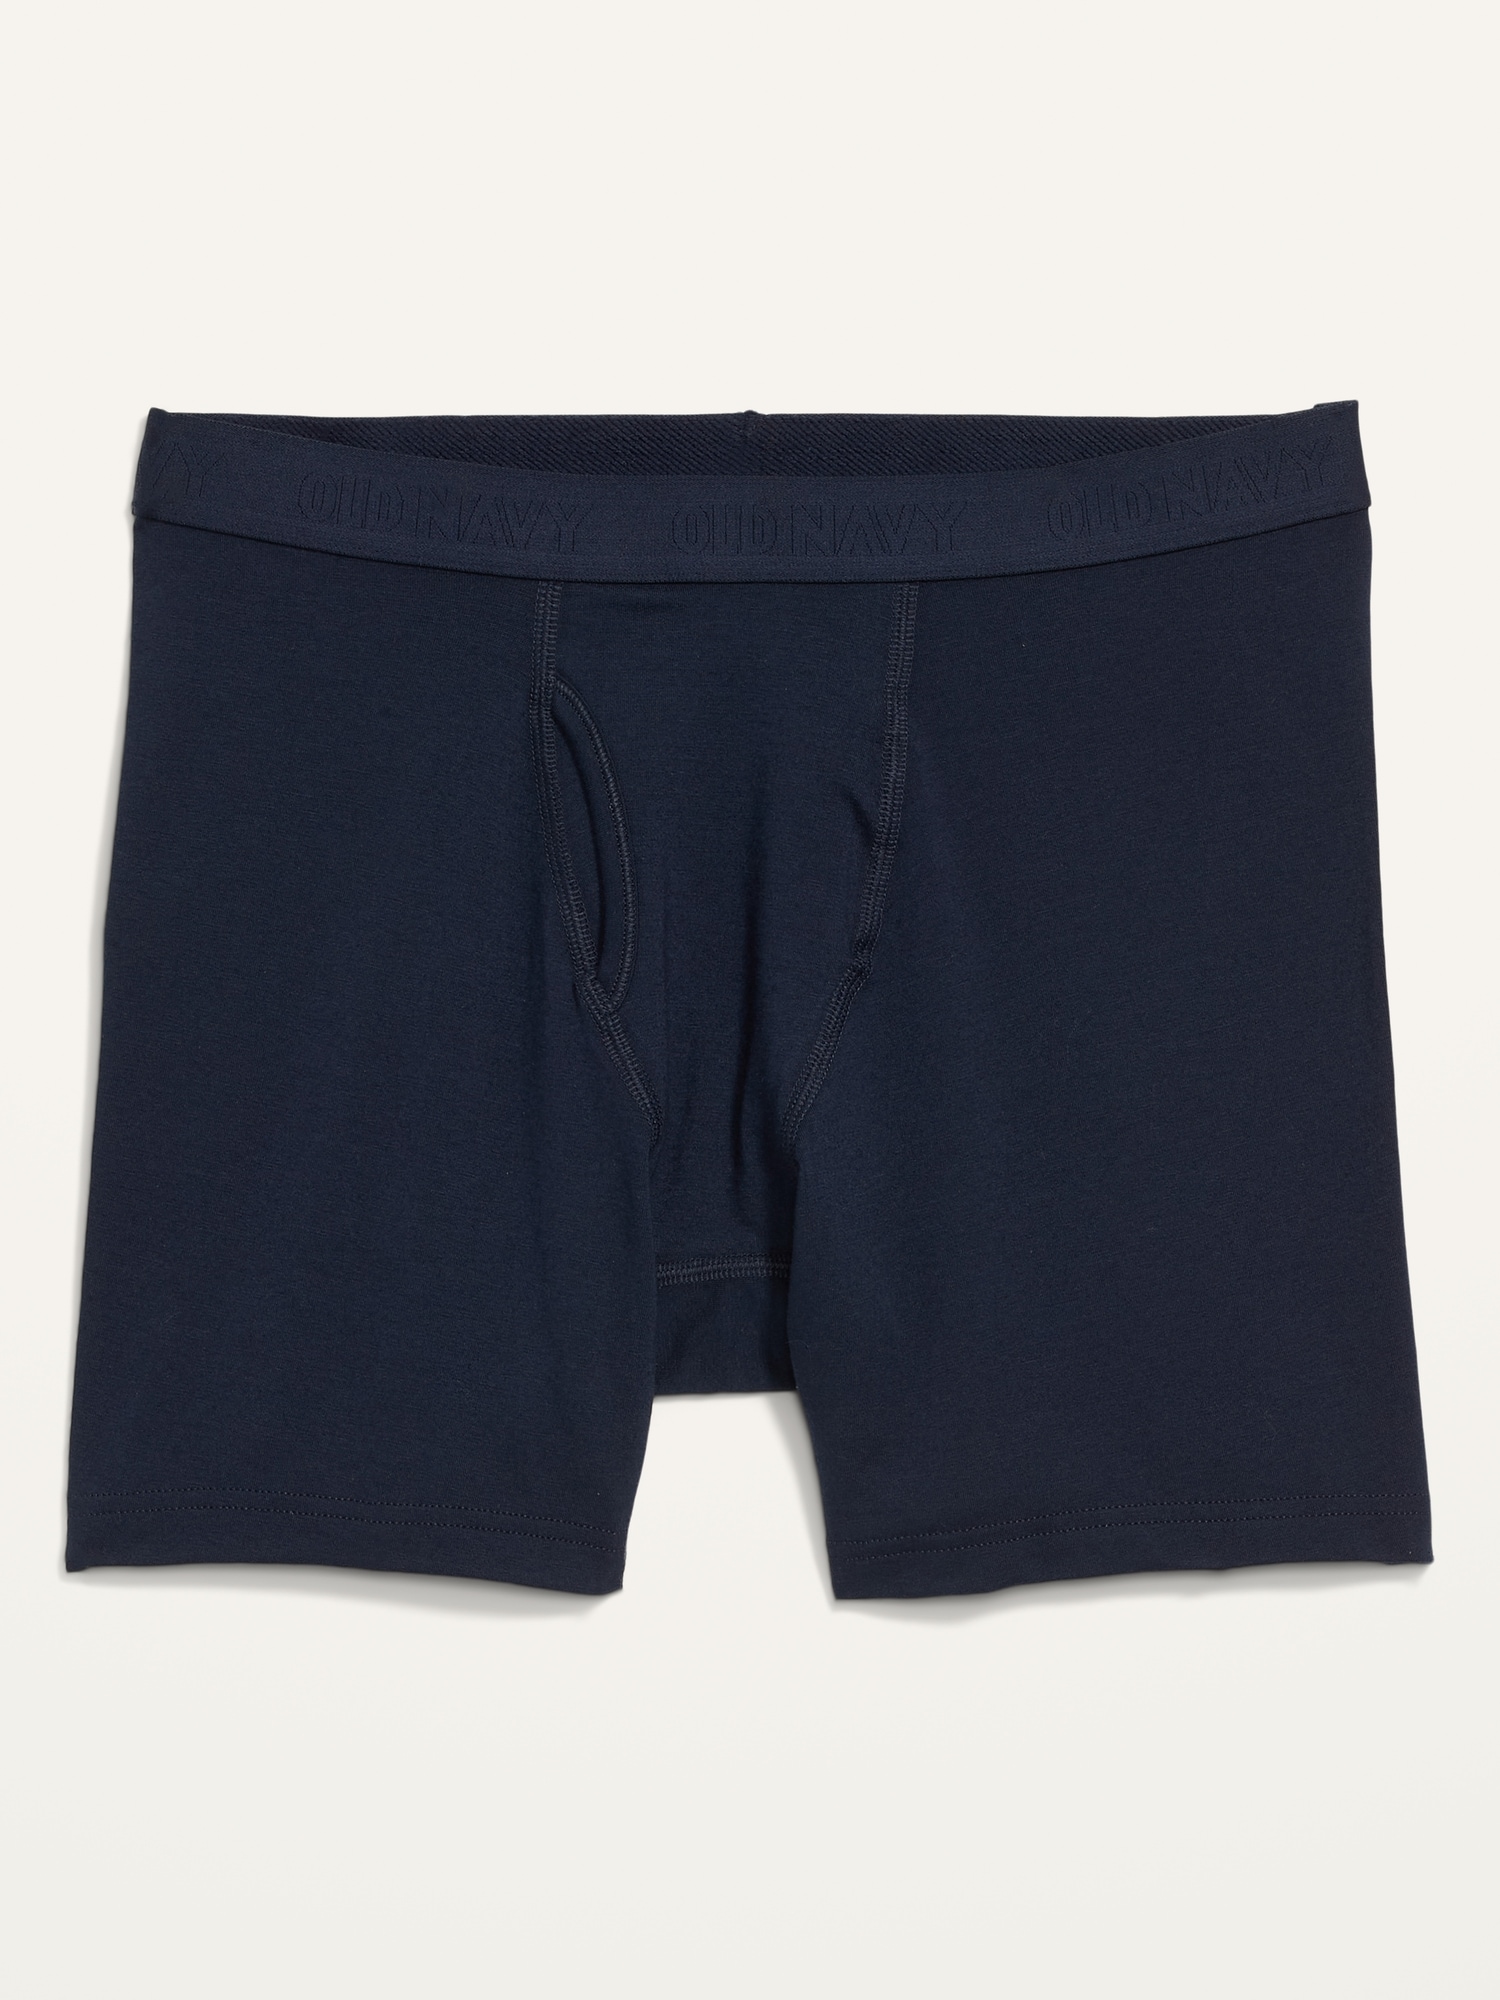 Soft-Washed Cotton-Blend Boxer Briefs Underwear for Men | Old Navy